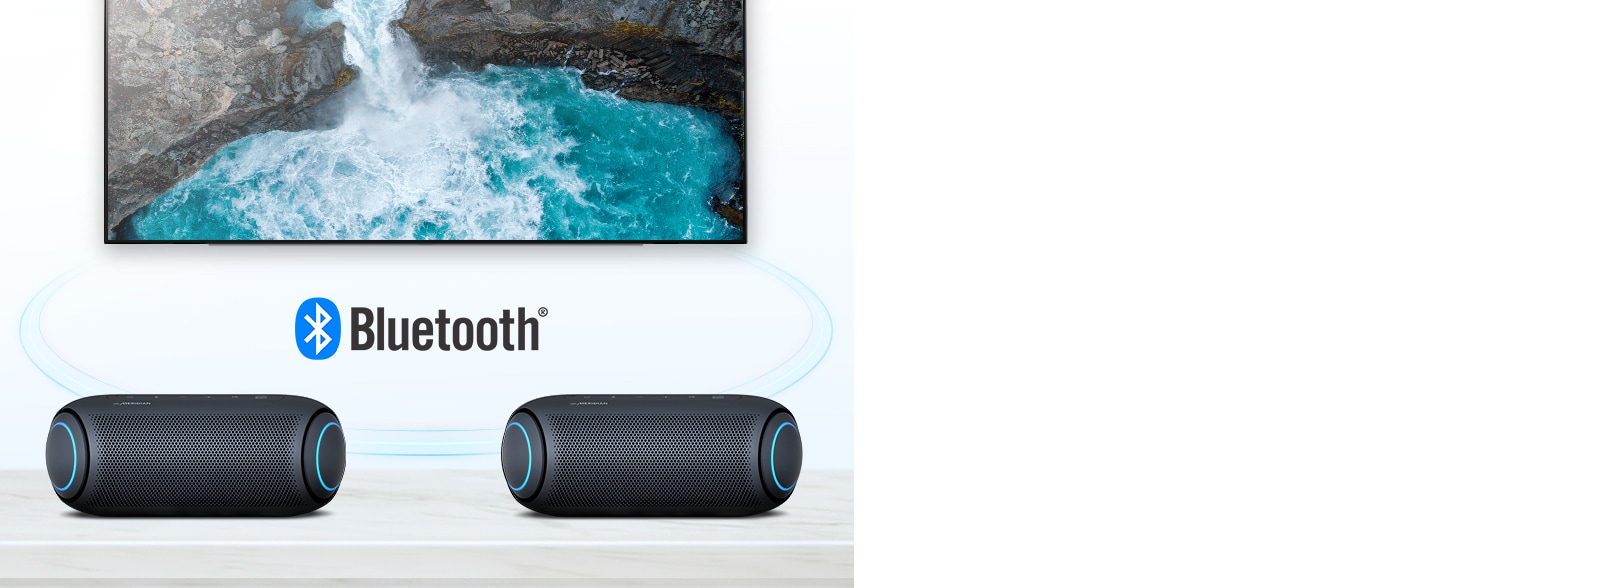 Sur une table, deux LG XBOOM Go avec un éclairage bleu ciel sont devant une télévision montrant une chute d'eau.